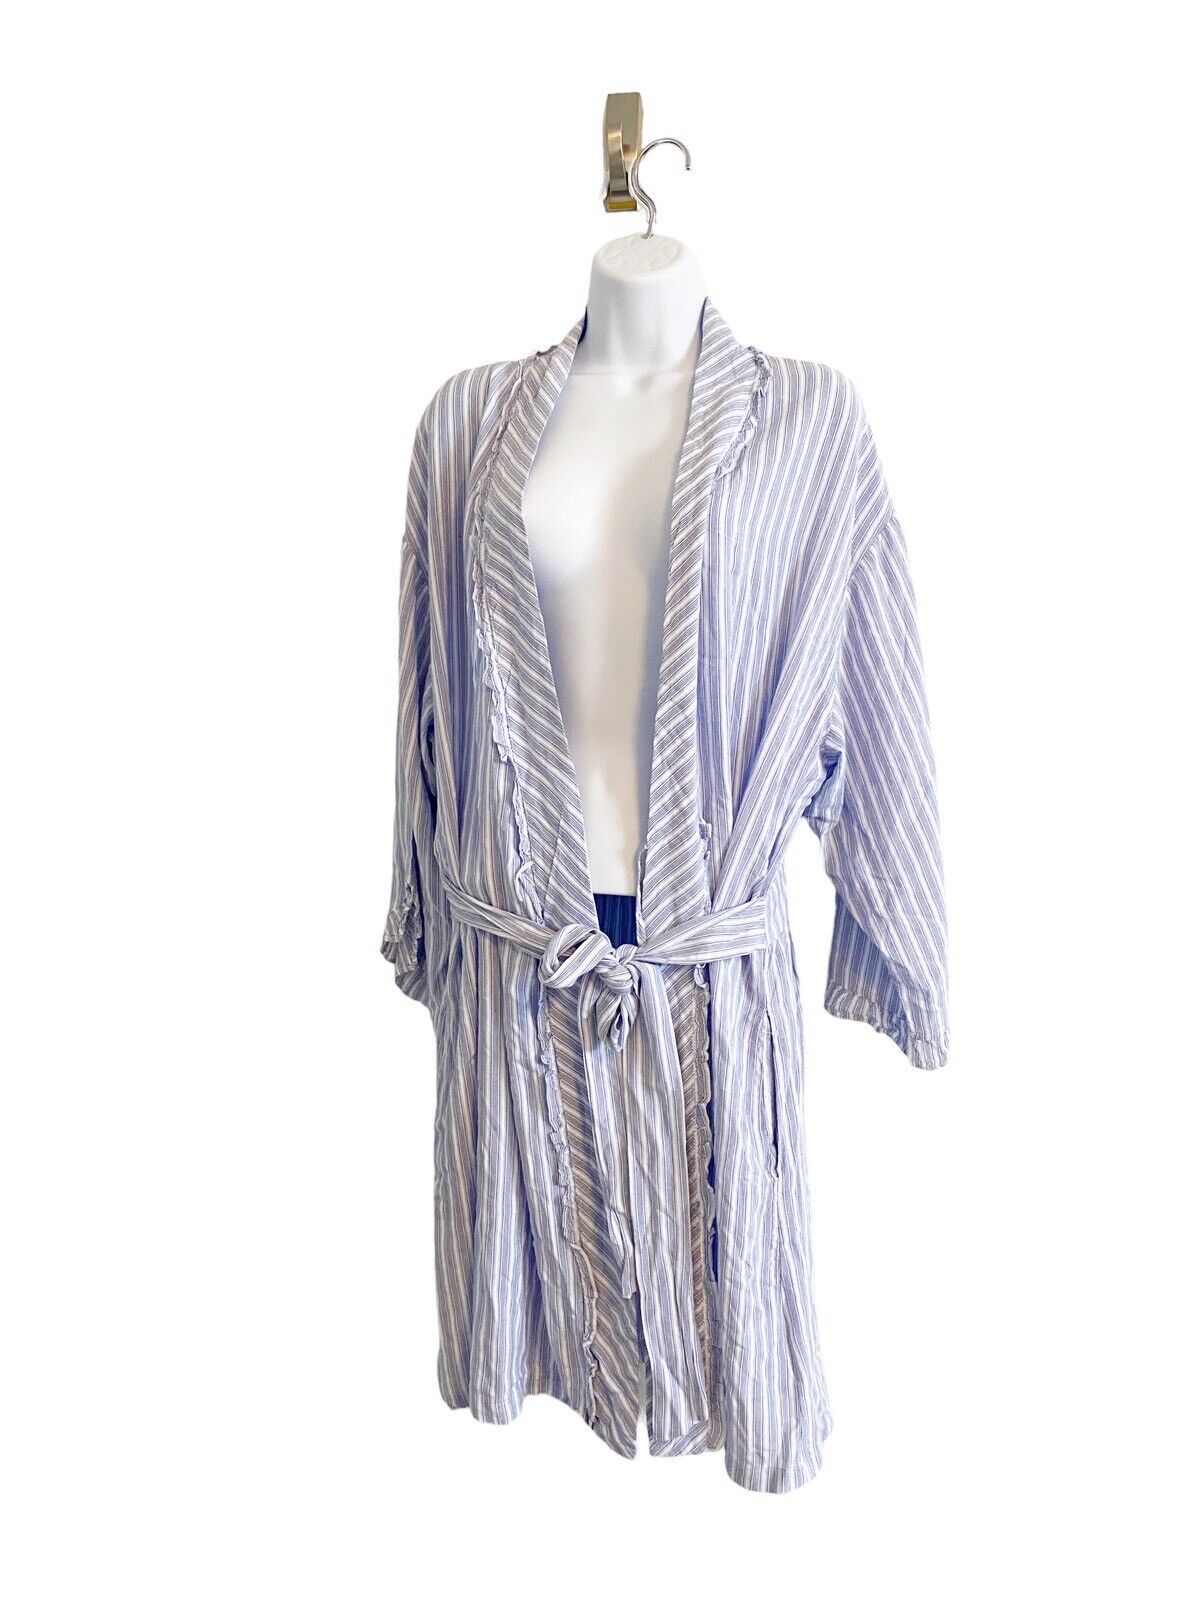 EILEEN WEST Cotton Robe Medium M Blue White Strip… - image 1